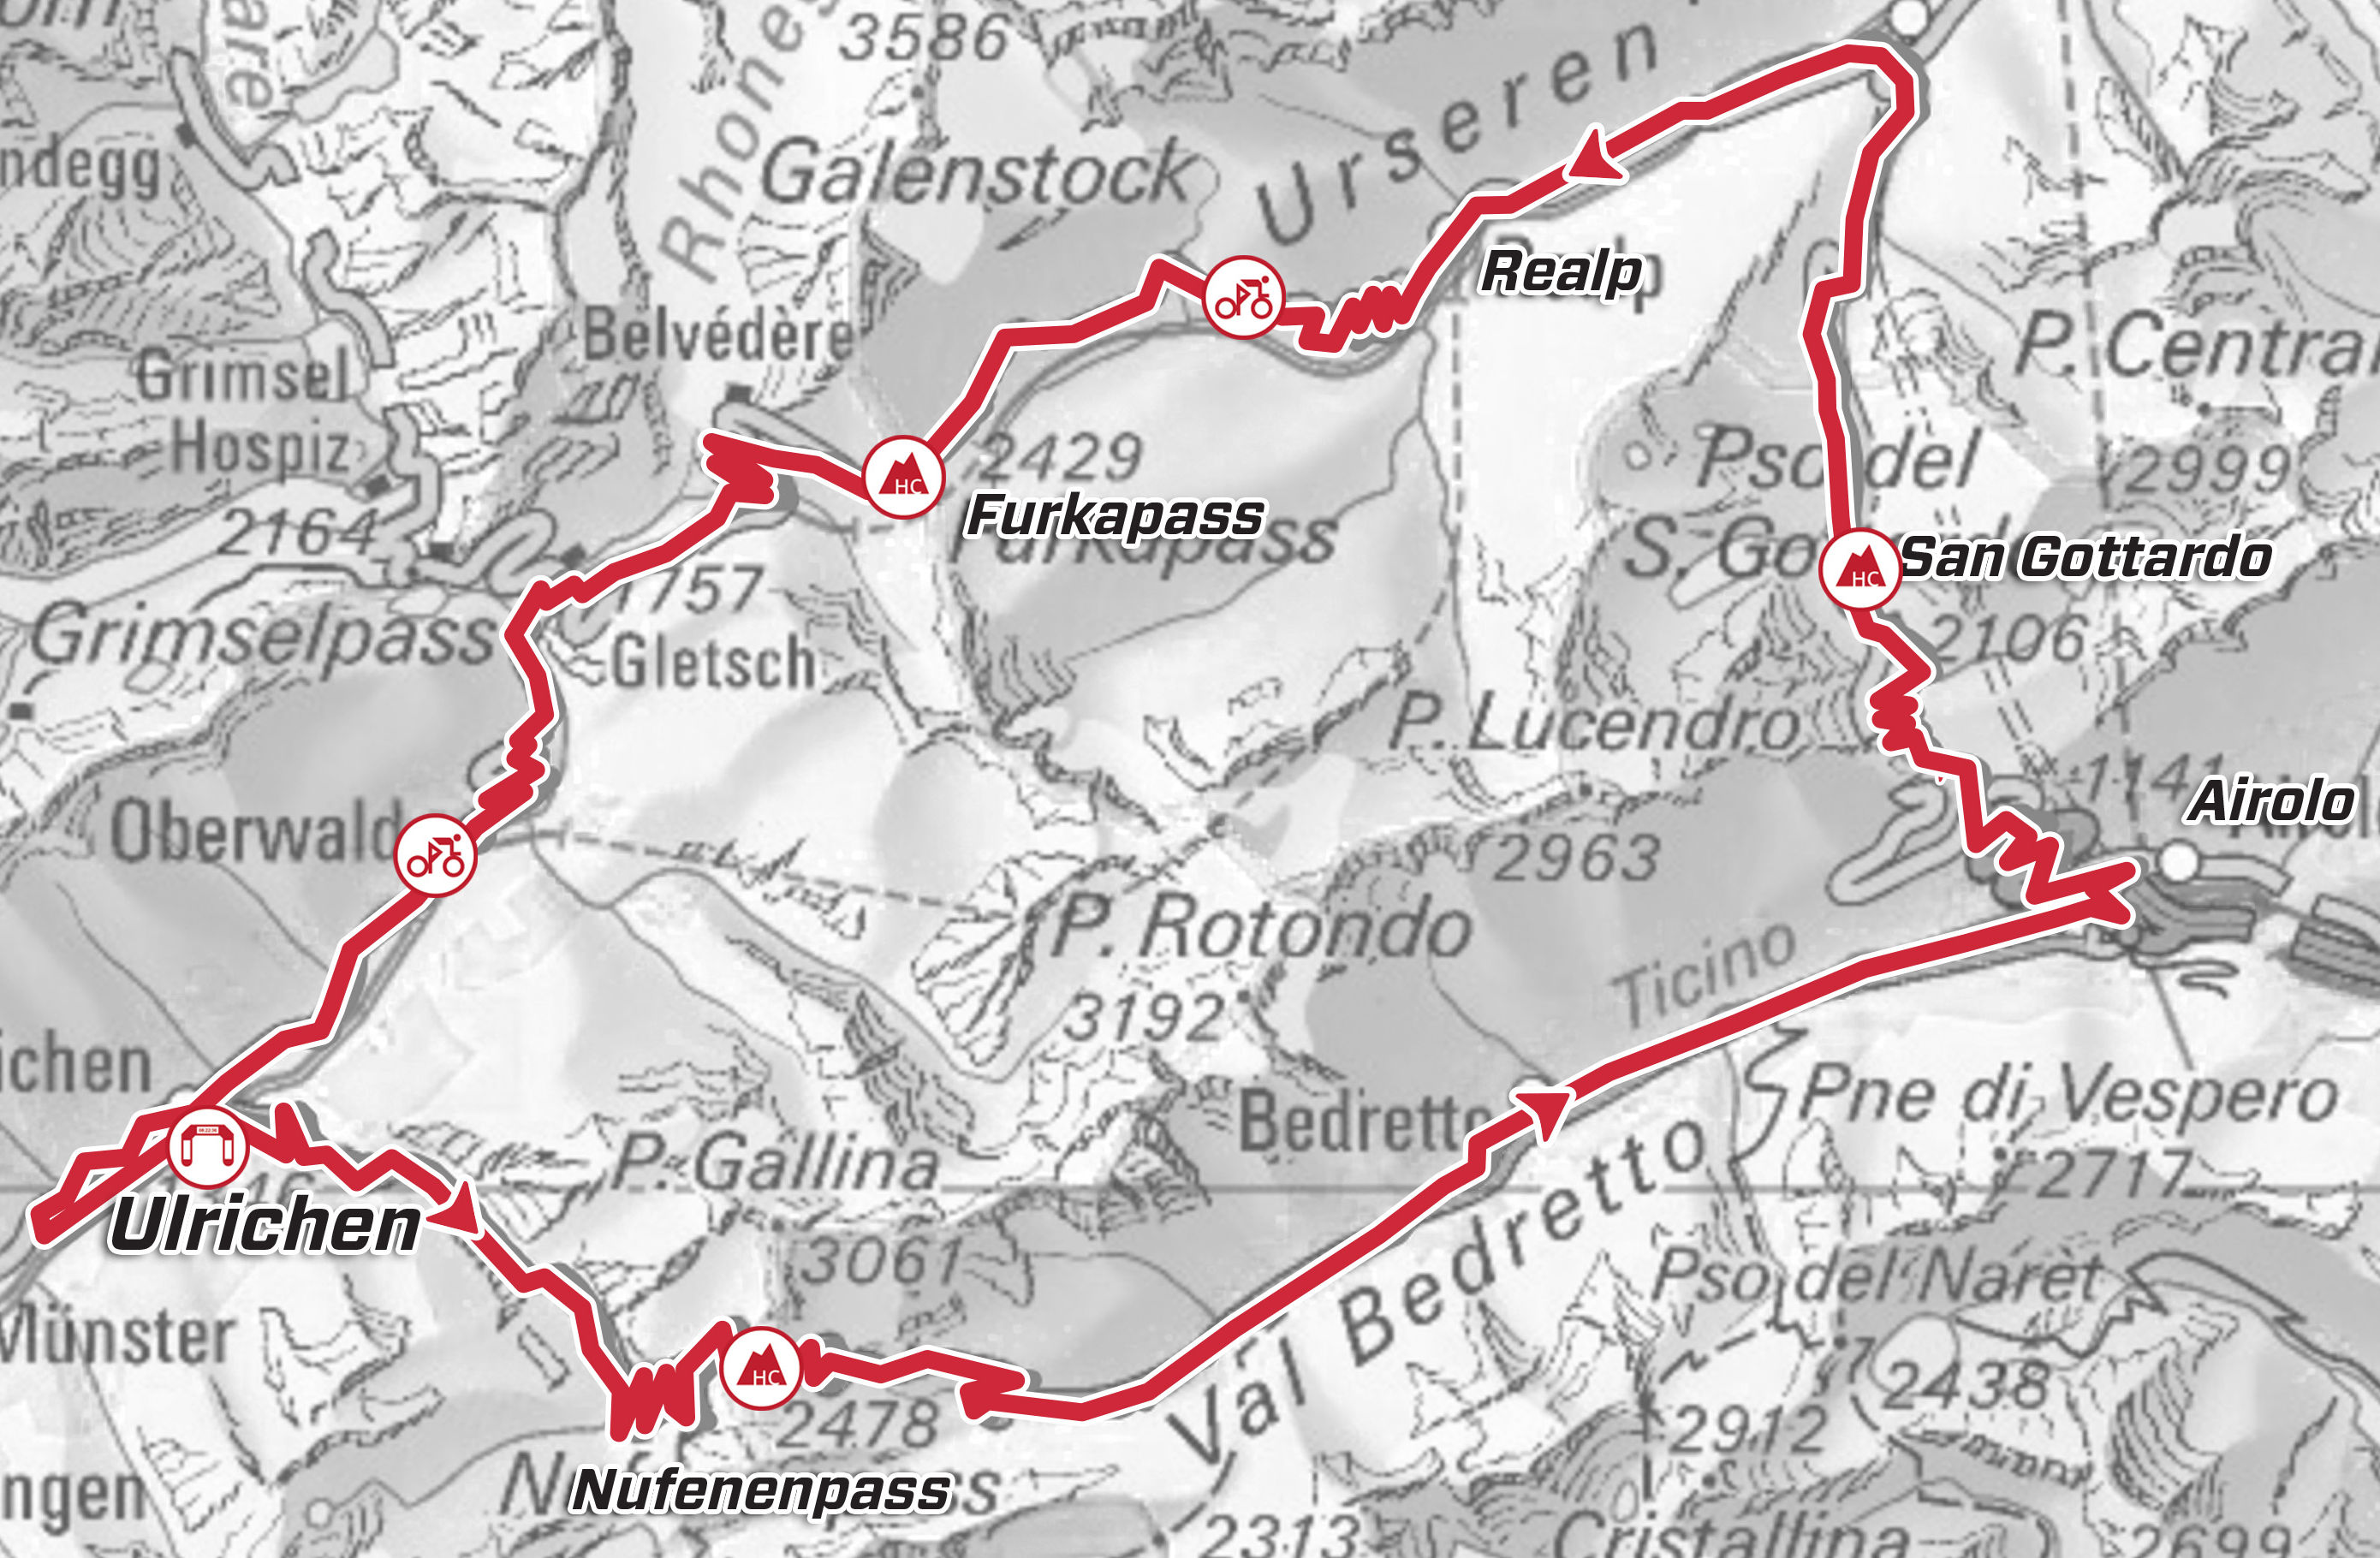 Tour de Suisse 2019: route stage 9 - source: tourdesuisse.ch